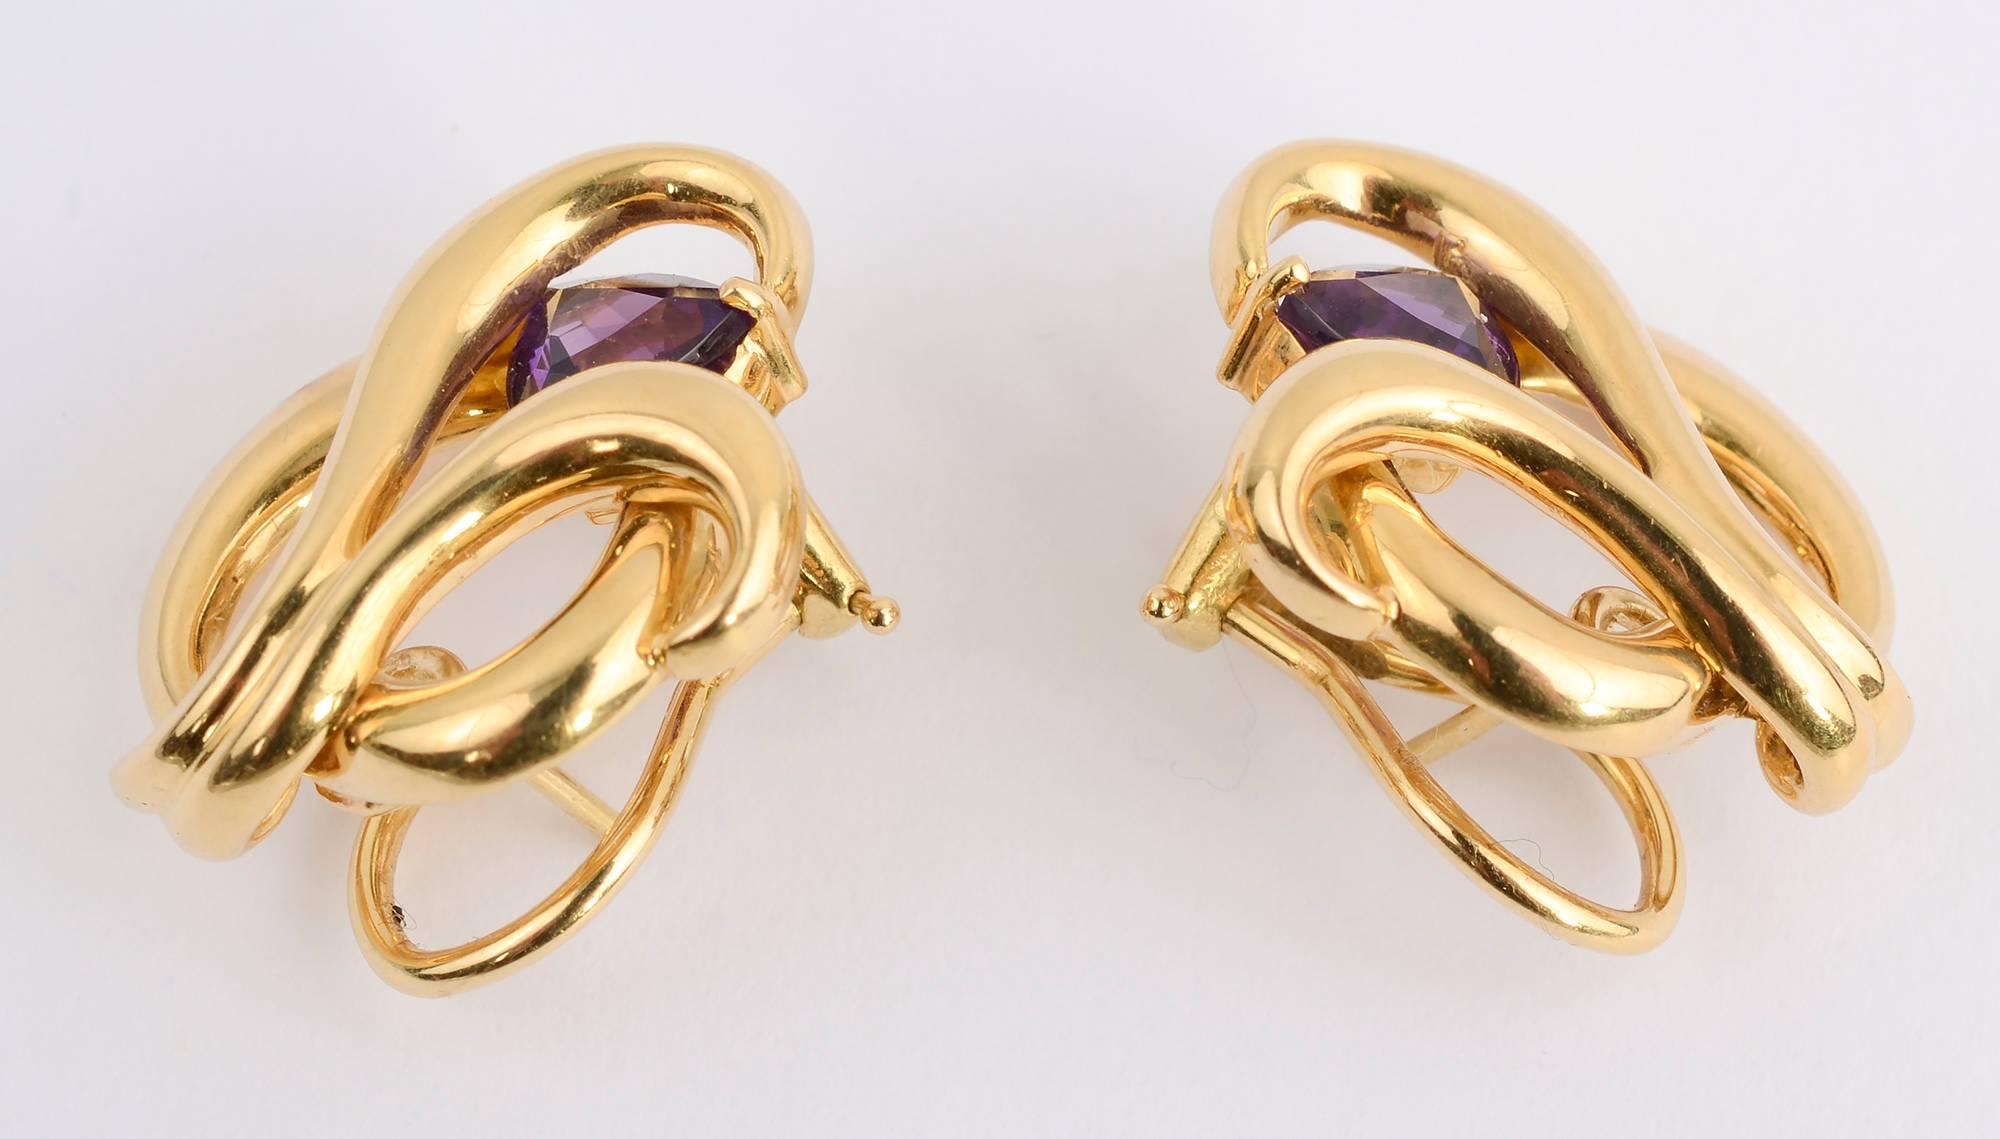 Sehr elegante Ohrringe aus 18-karätigem Gold in einem Wirbelmuster mit einem facettierten Amethysten in Dreiecksform. Die Rückseiten sind sowohl Klammern als auch Pfosten. 
Die Ohrringe sind 1 Zoll lang und 7/8 Zoll breit.